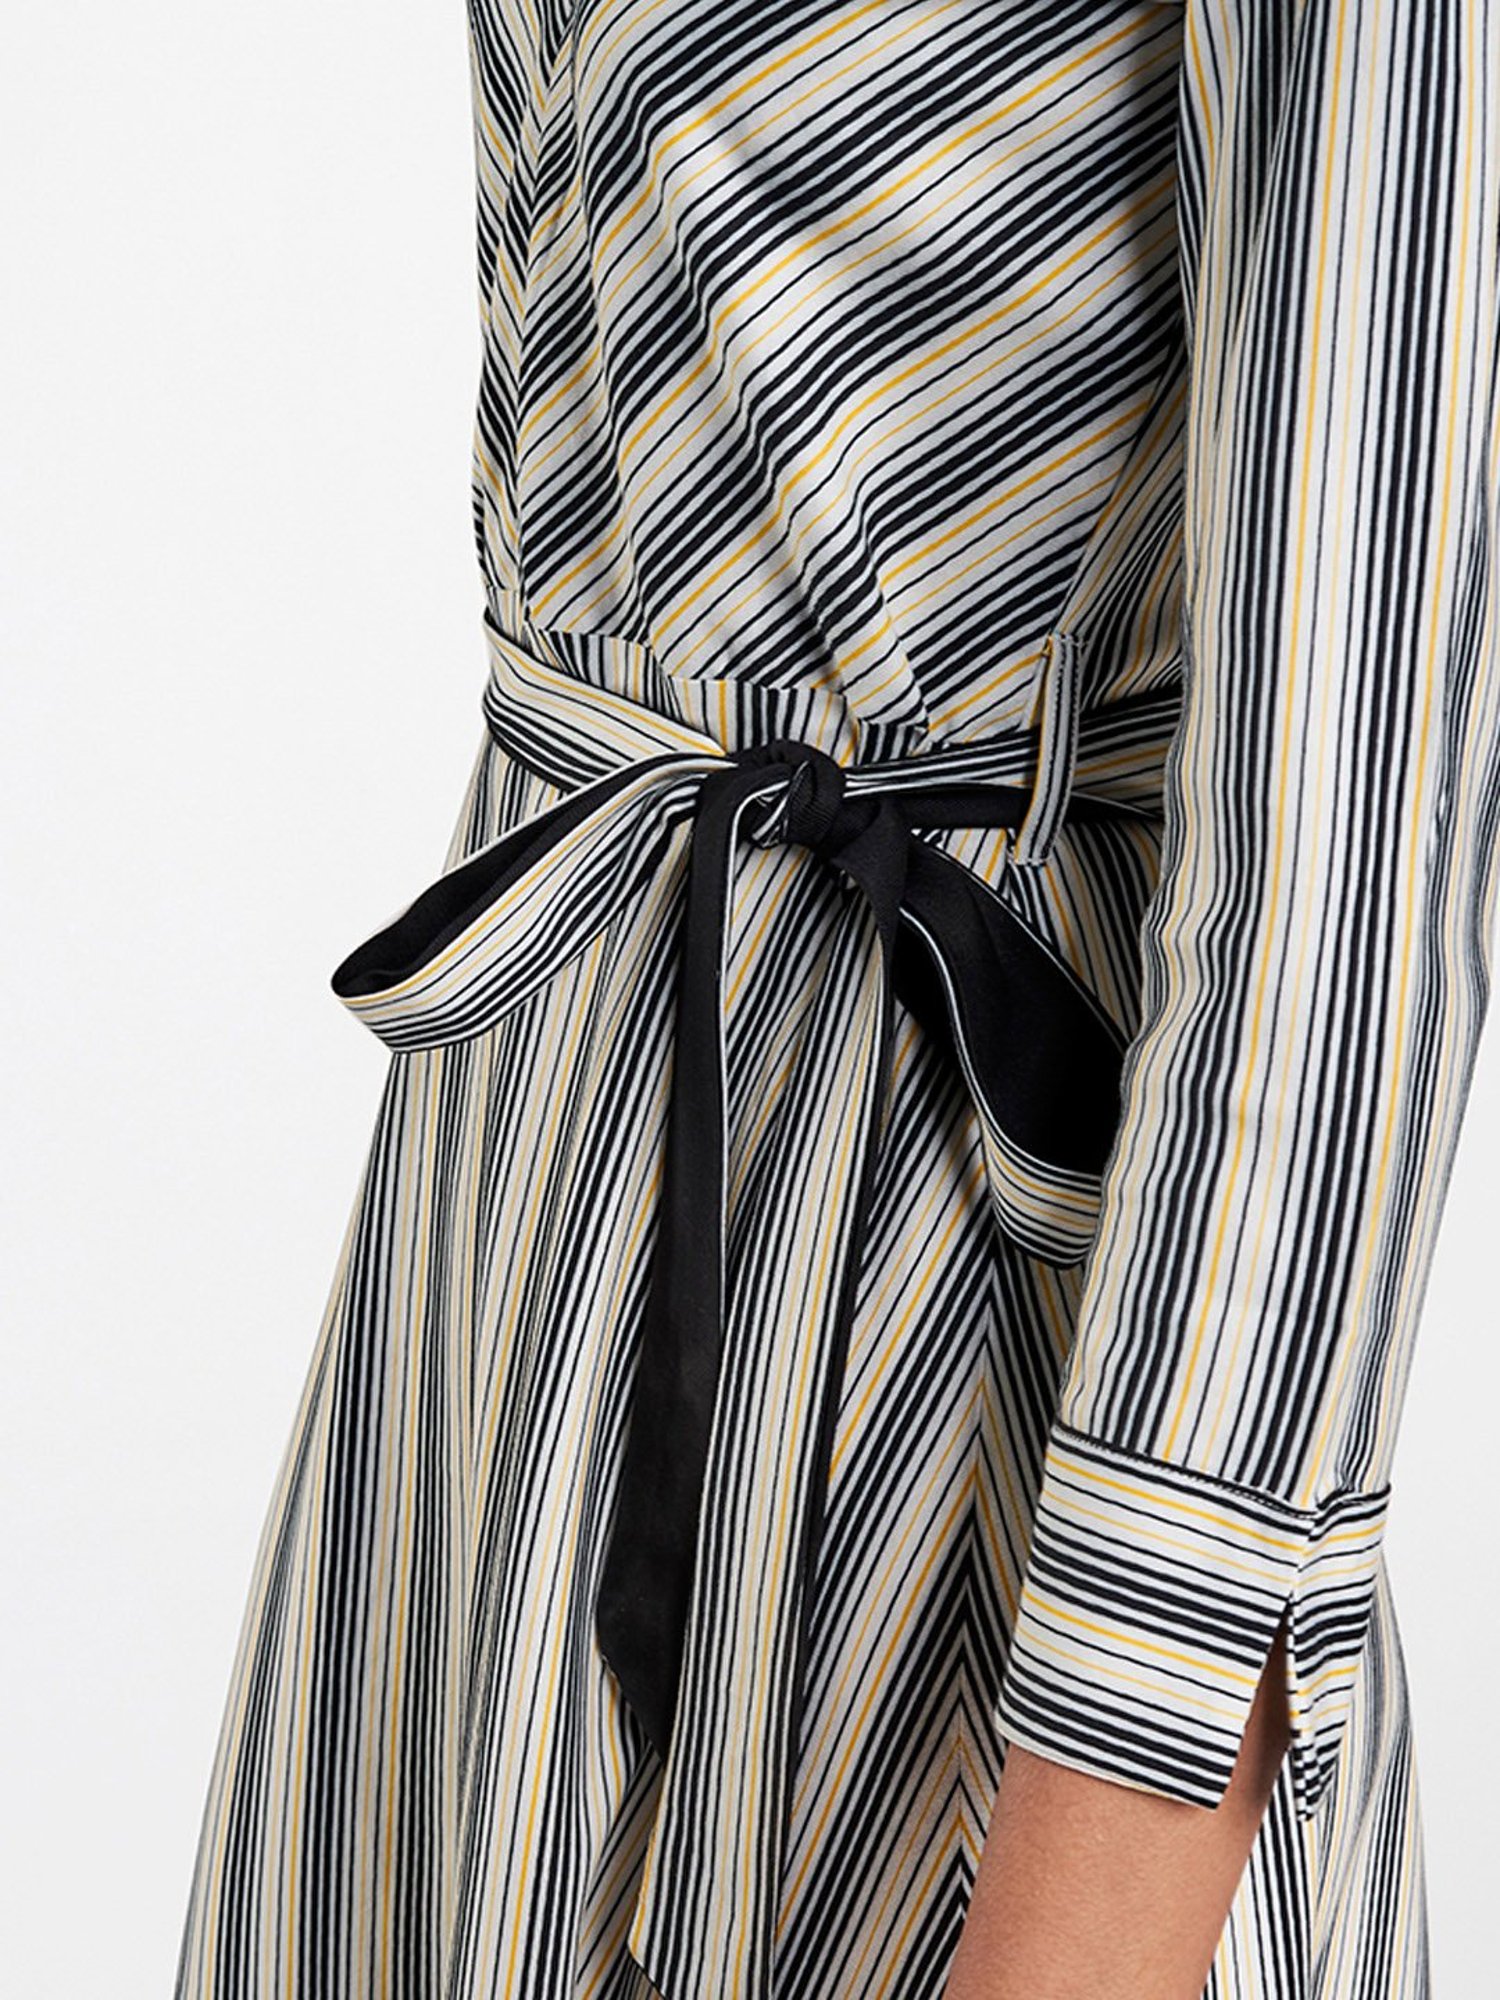 Buy FairOnly Women Summer Slim Black White Stripes Pattern Dress Short  Sleeve Aline Dress at Amazonin